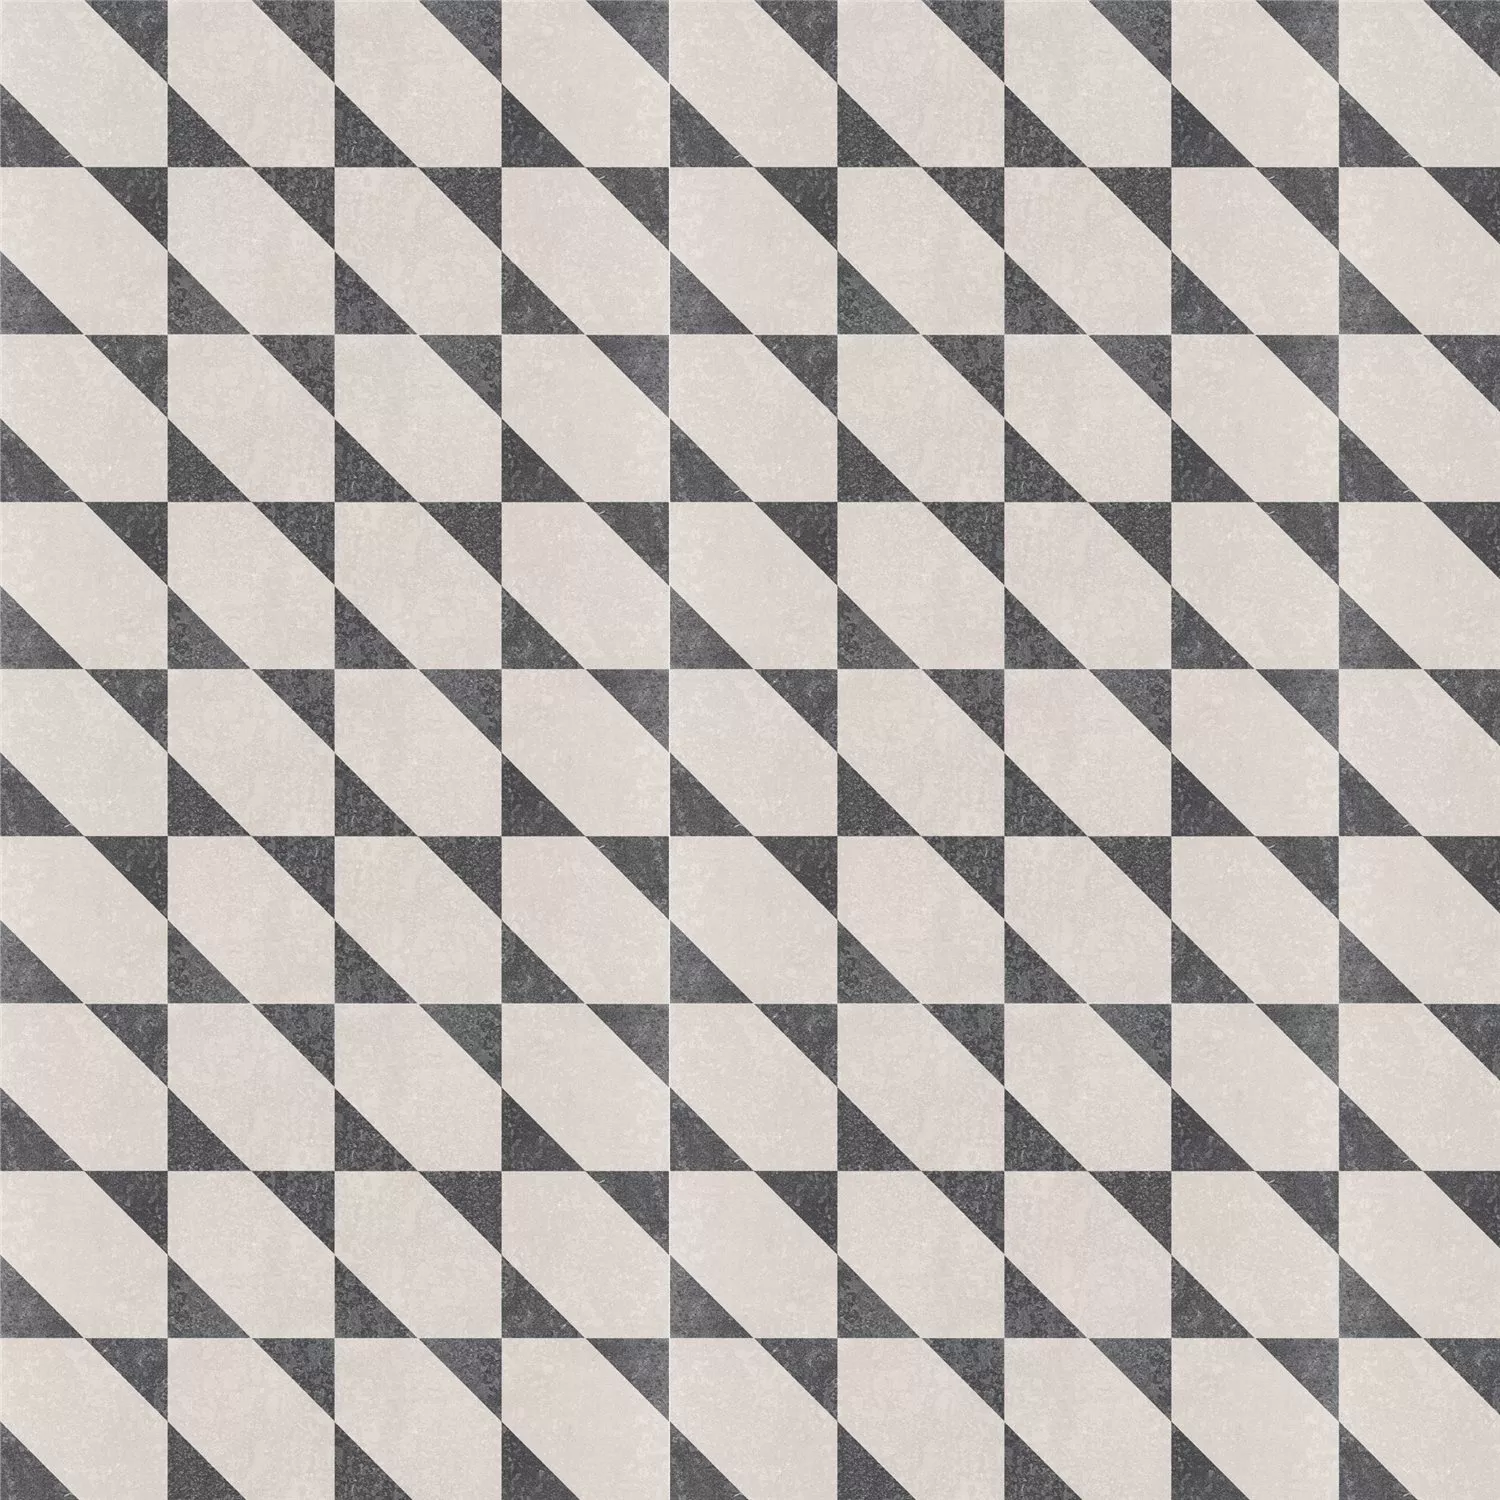 Sample Cement Tiles Retro Optic Gris Floor Tiles Alonso 18,6x18,6cm